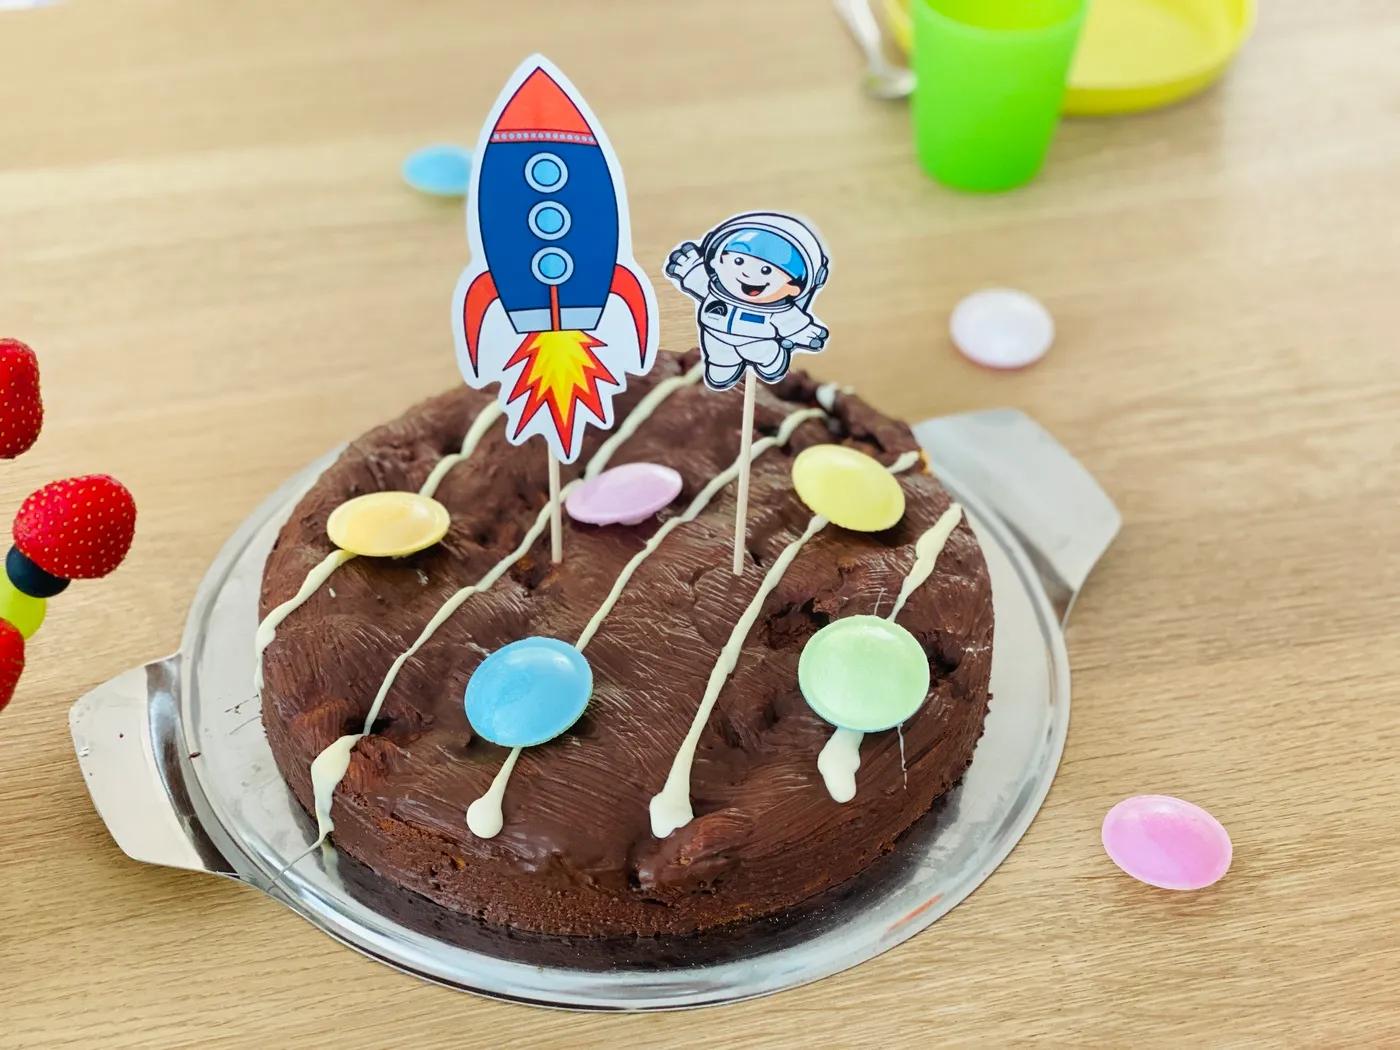 Perfektes Essen für den Astronauten Geburtstag | ohmylife - Oh my life